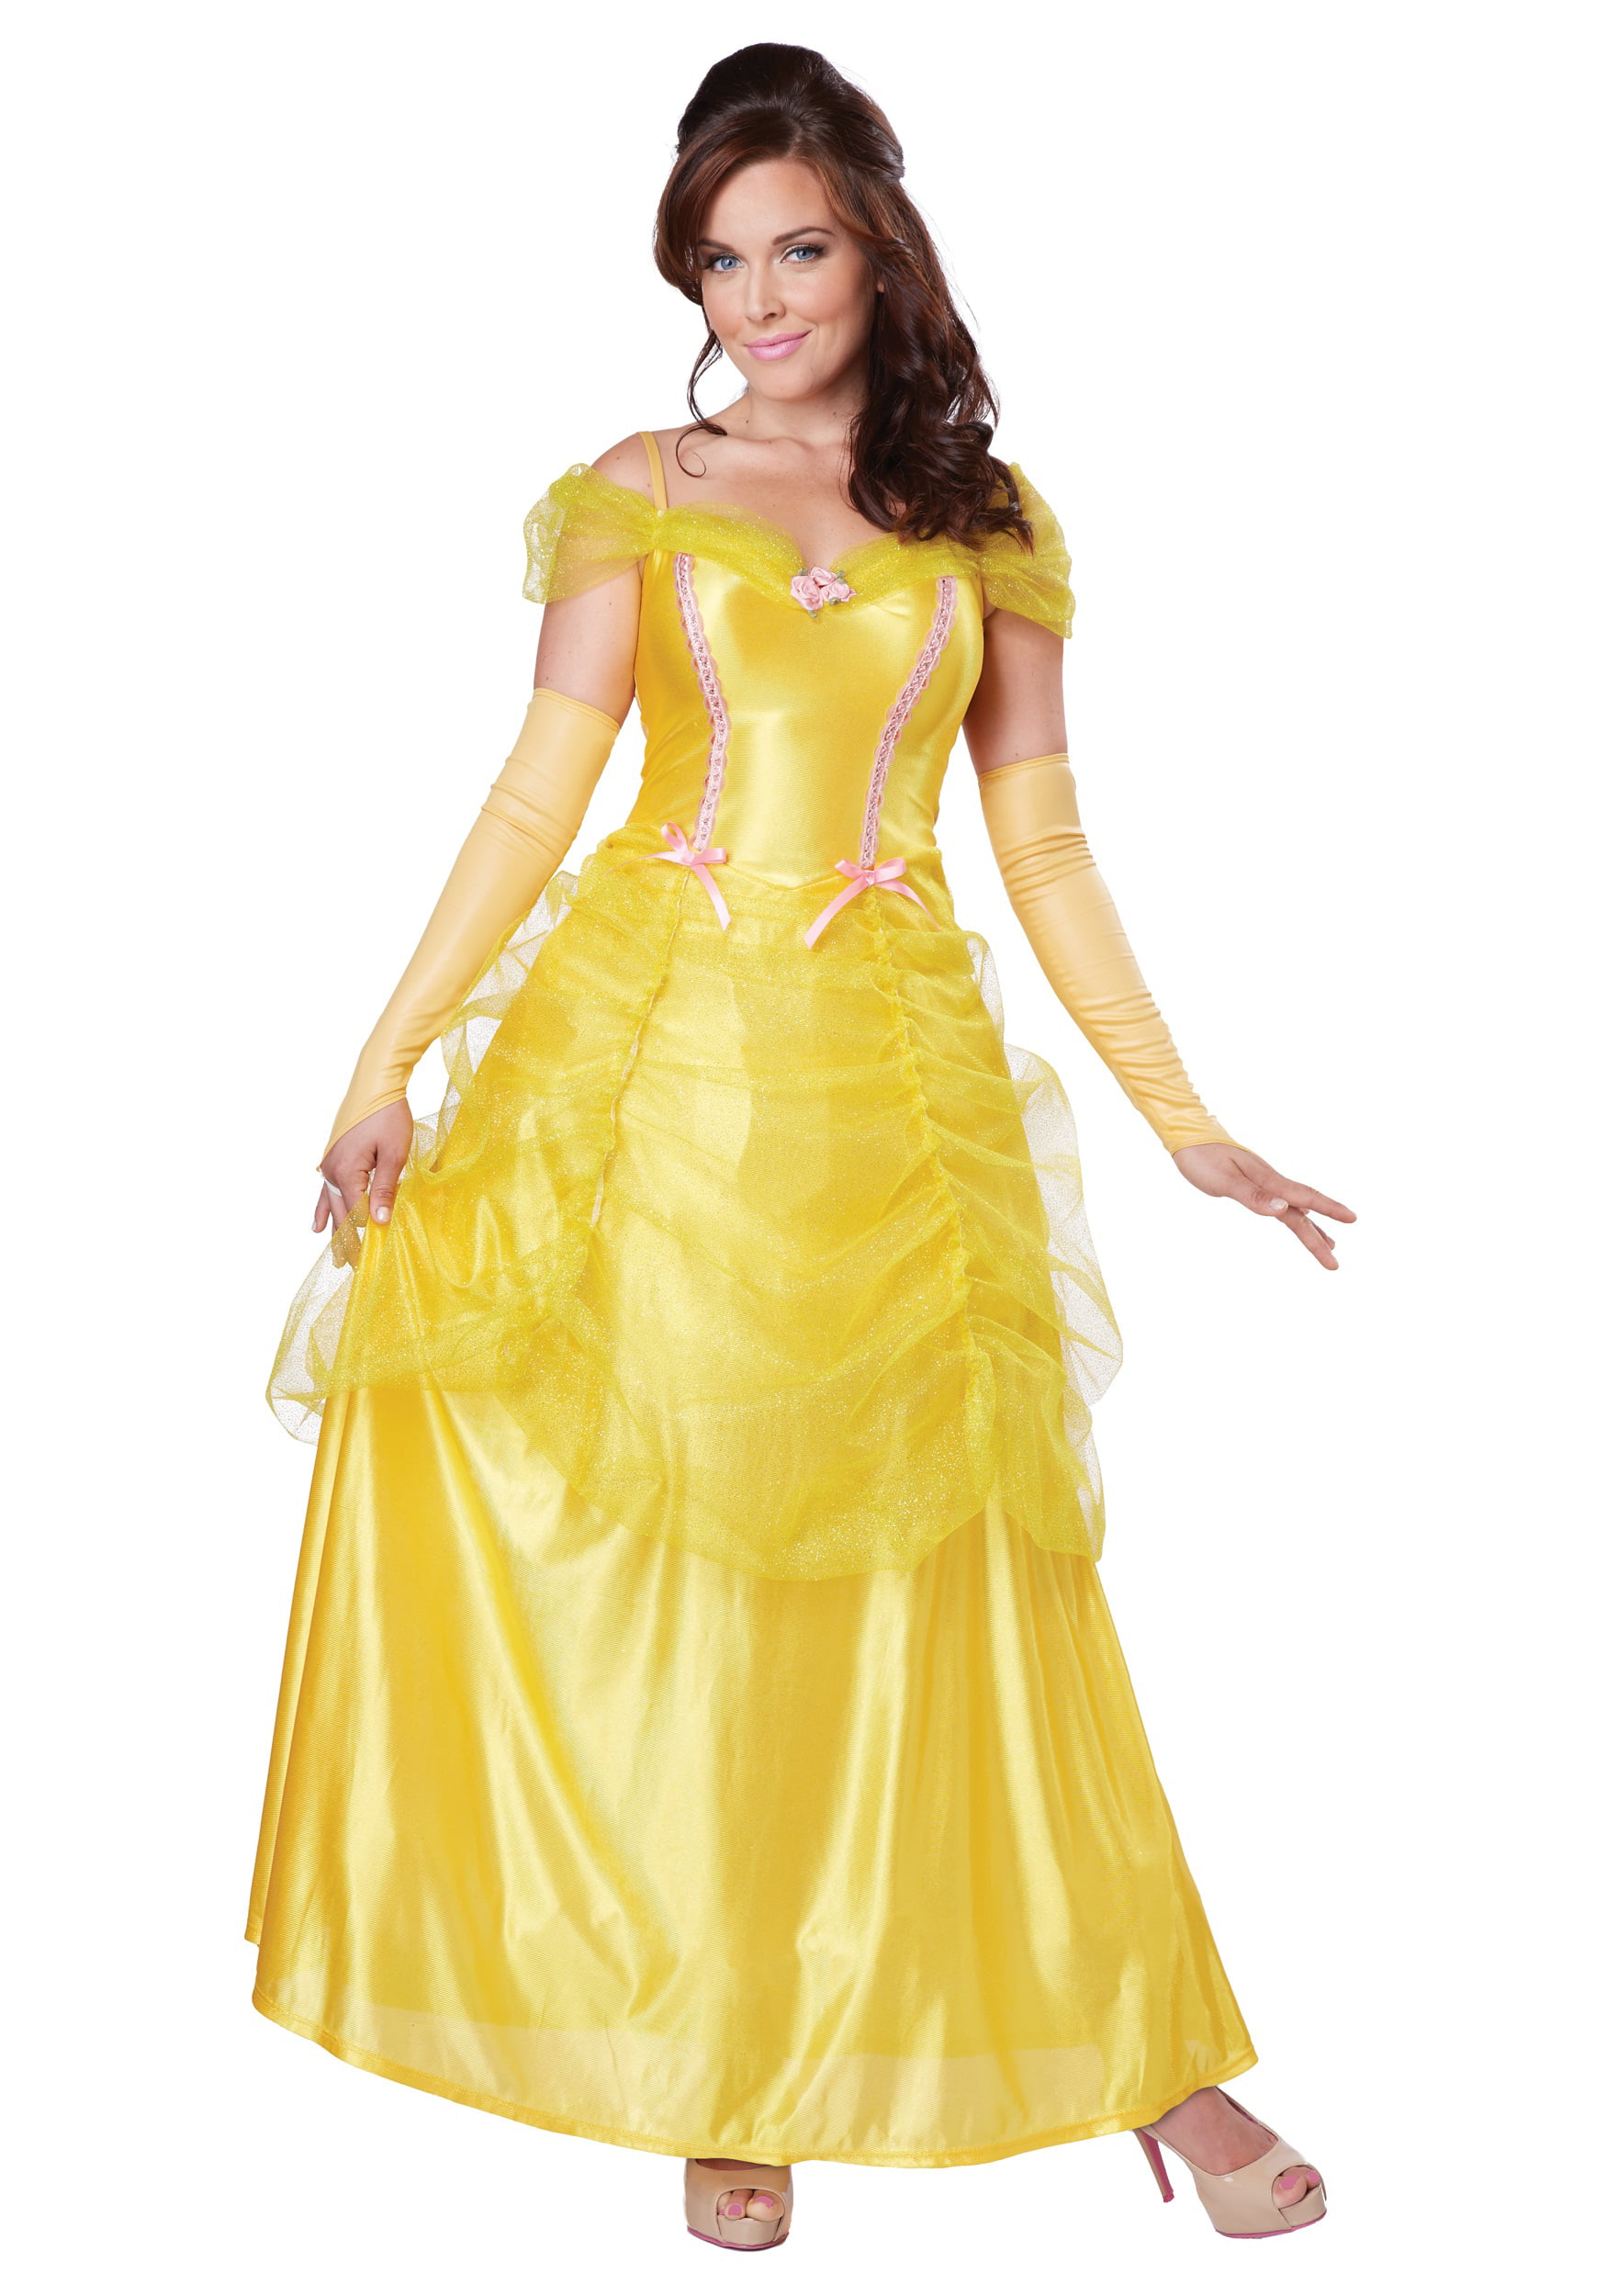 Принцесса в желтом платье. Платье Белль. Карнавальный костюм принцесса Белль. Костюм принцессы Белль взрослый. Костюм красавицы Бэль 42-44.